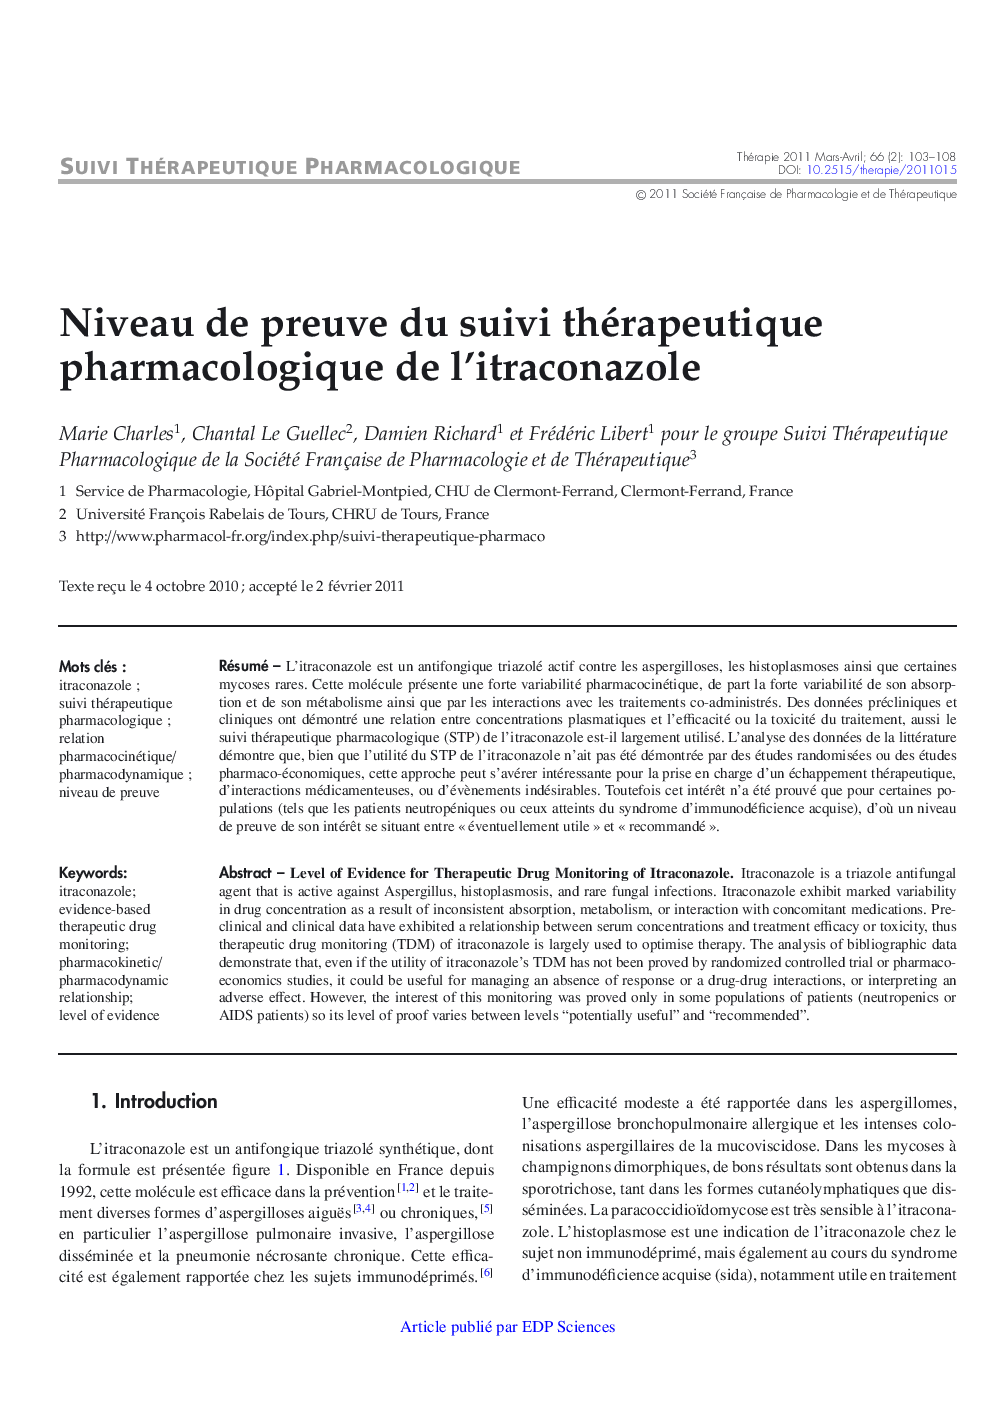 Niveau de preuve du suivi thérapeutique pharmacologique de l'itraconazole